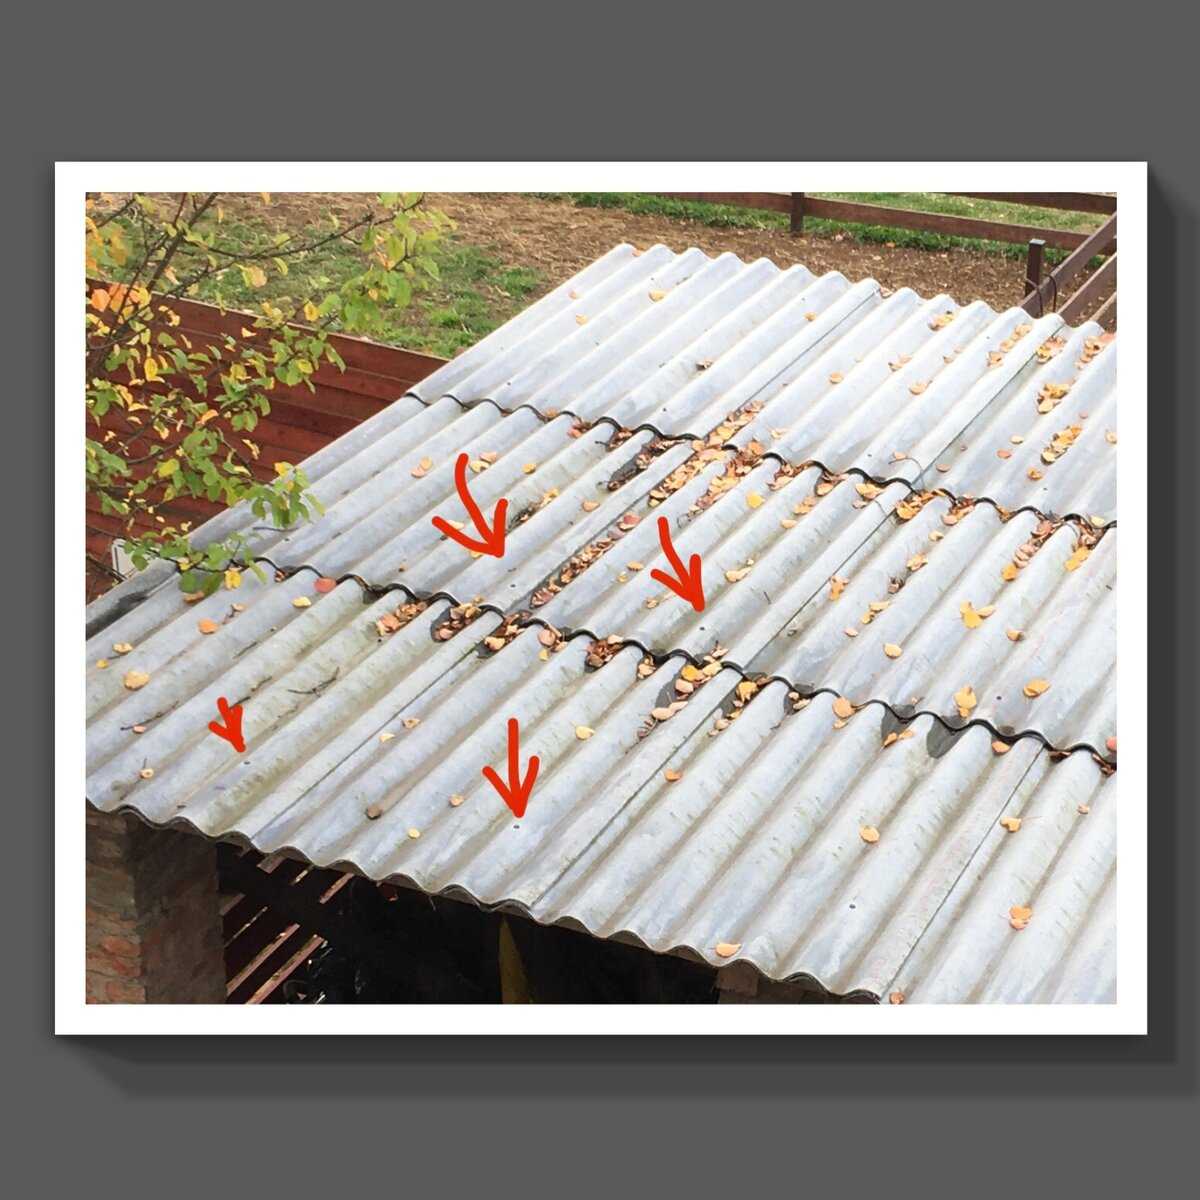 Требования к крепежу для шифера, три вида подходящих креплений и подробная инструкция, как крепить шифер на крыше — в статье